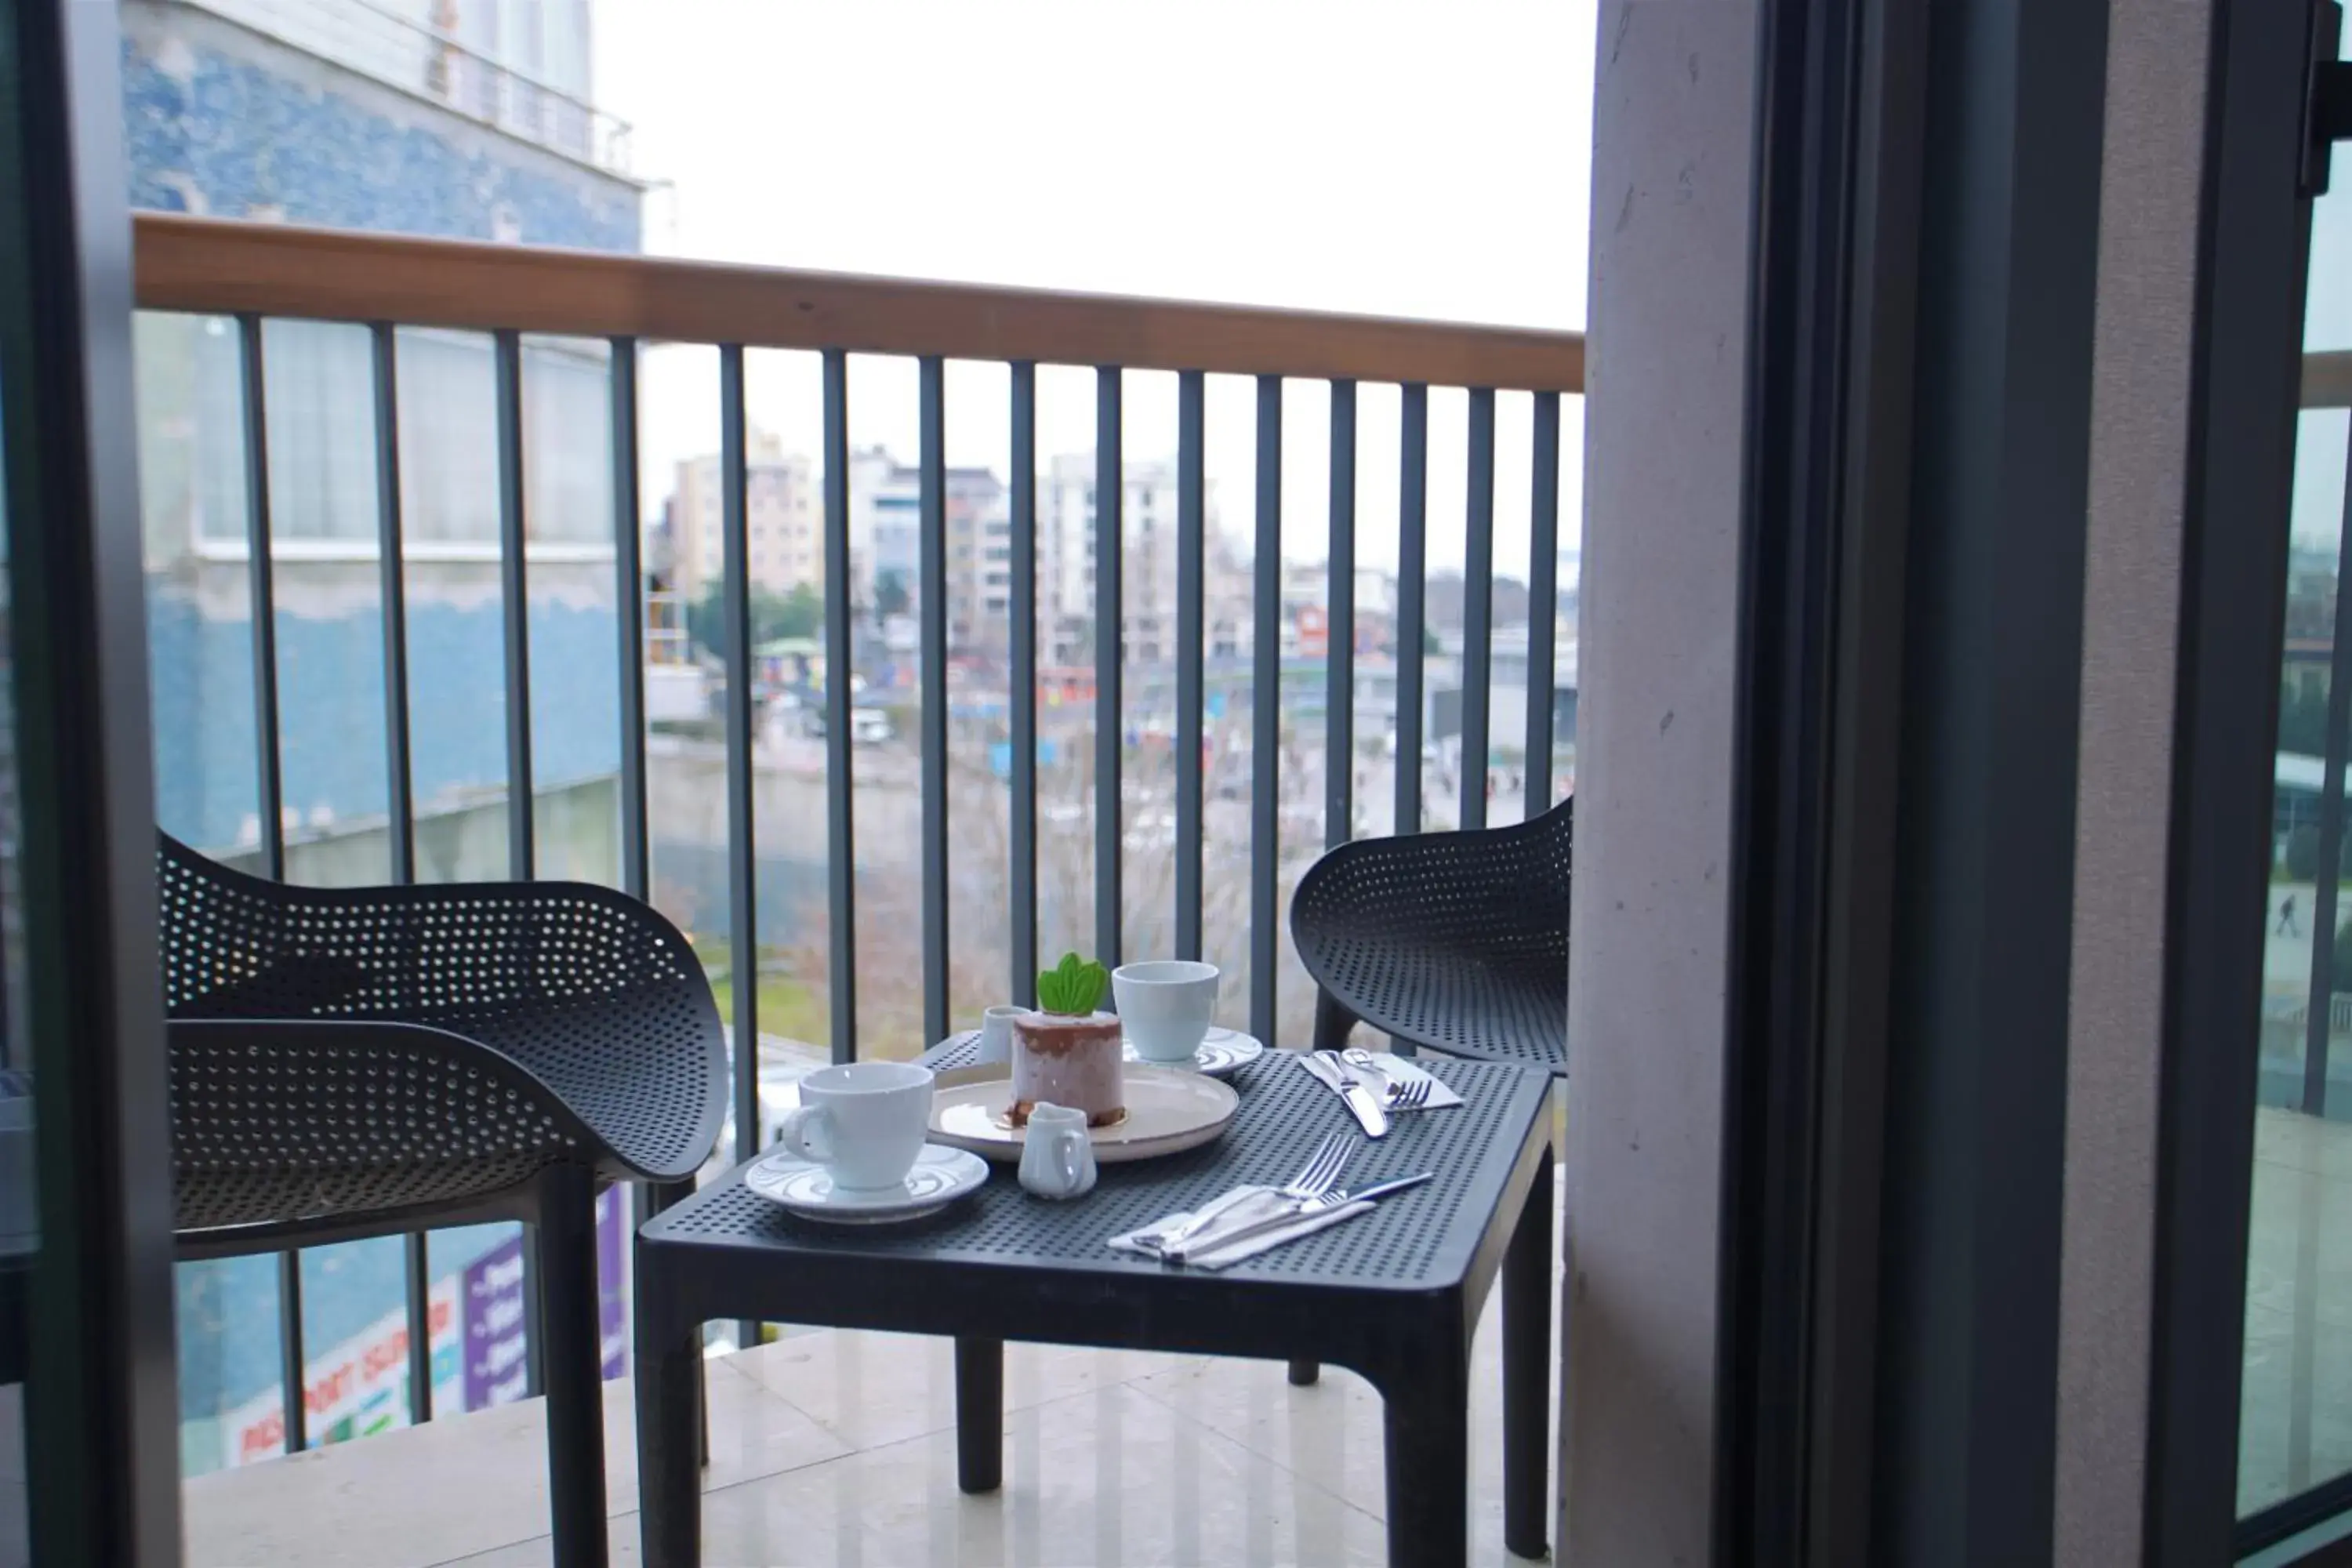 Balcony/Terrace in Dosso Dossi Hotels Yenikapı